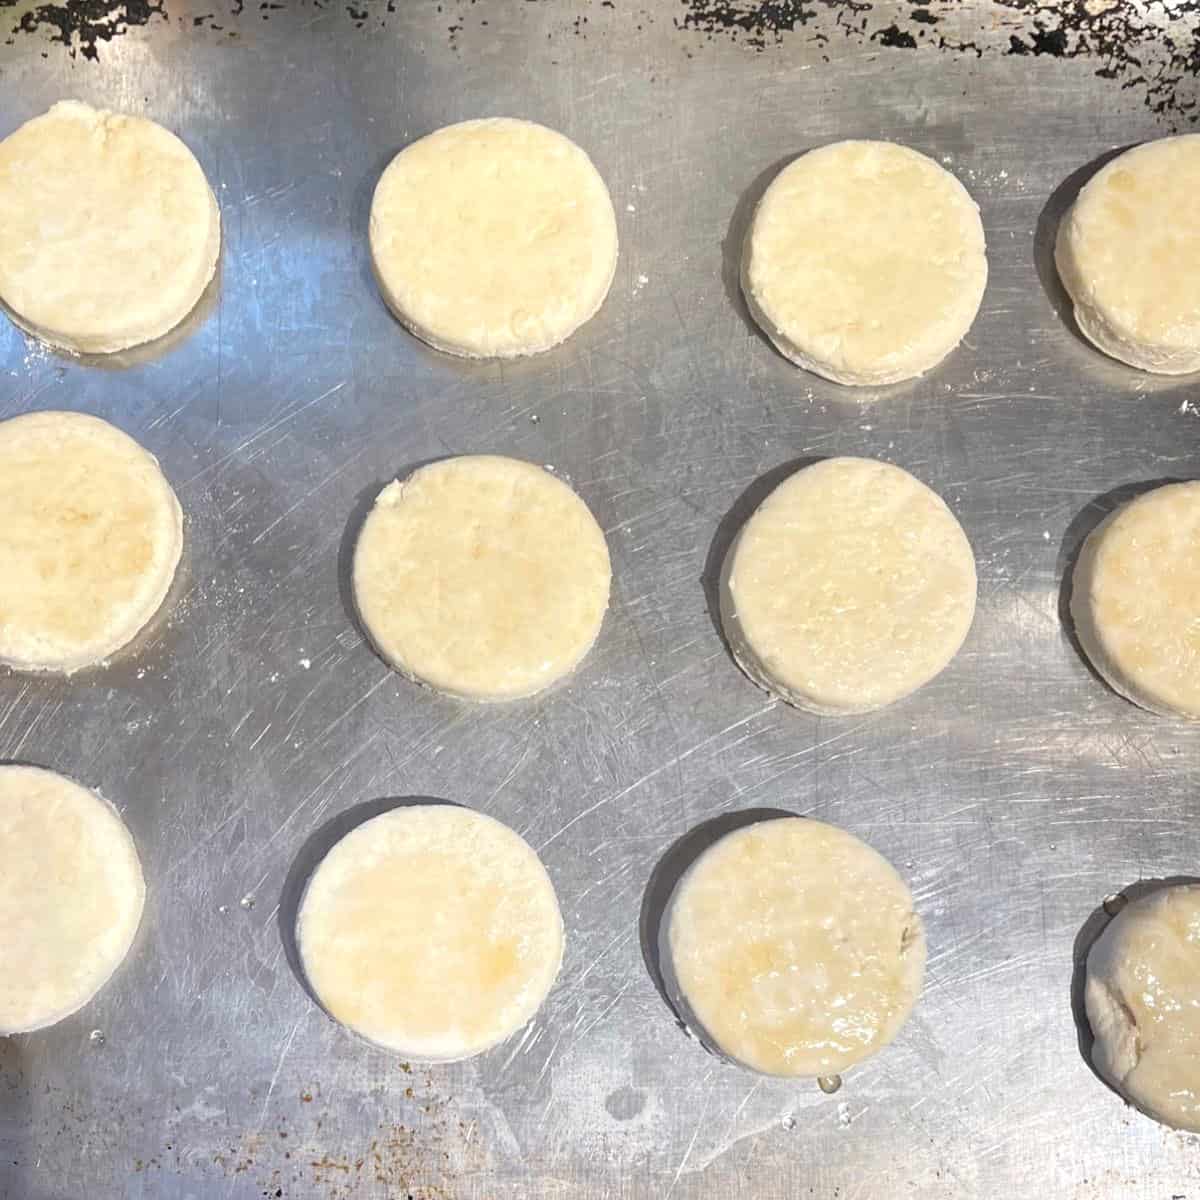 Vegan biscuits on baking sheet.